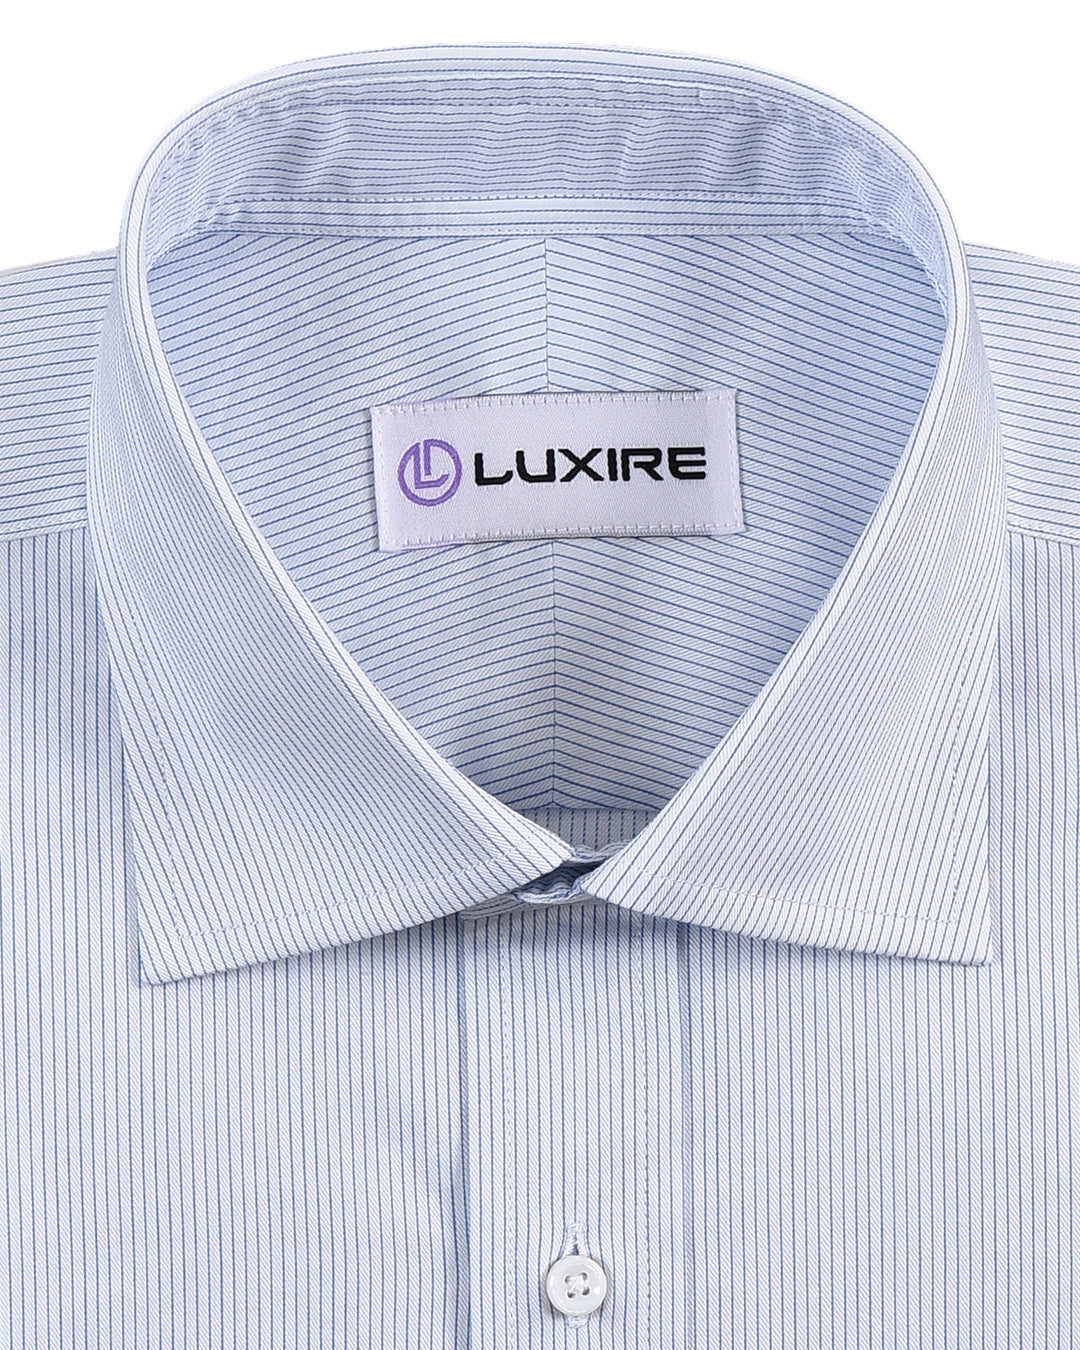 Luxire Presto: Monti White & Blue Shirt